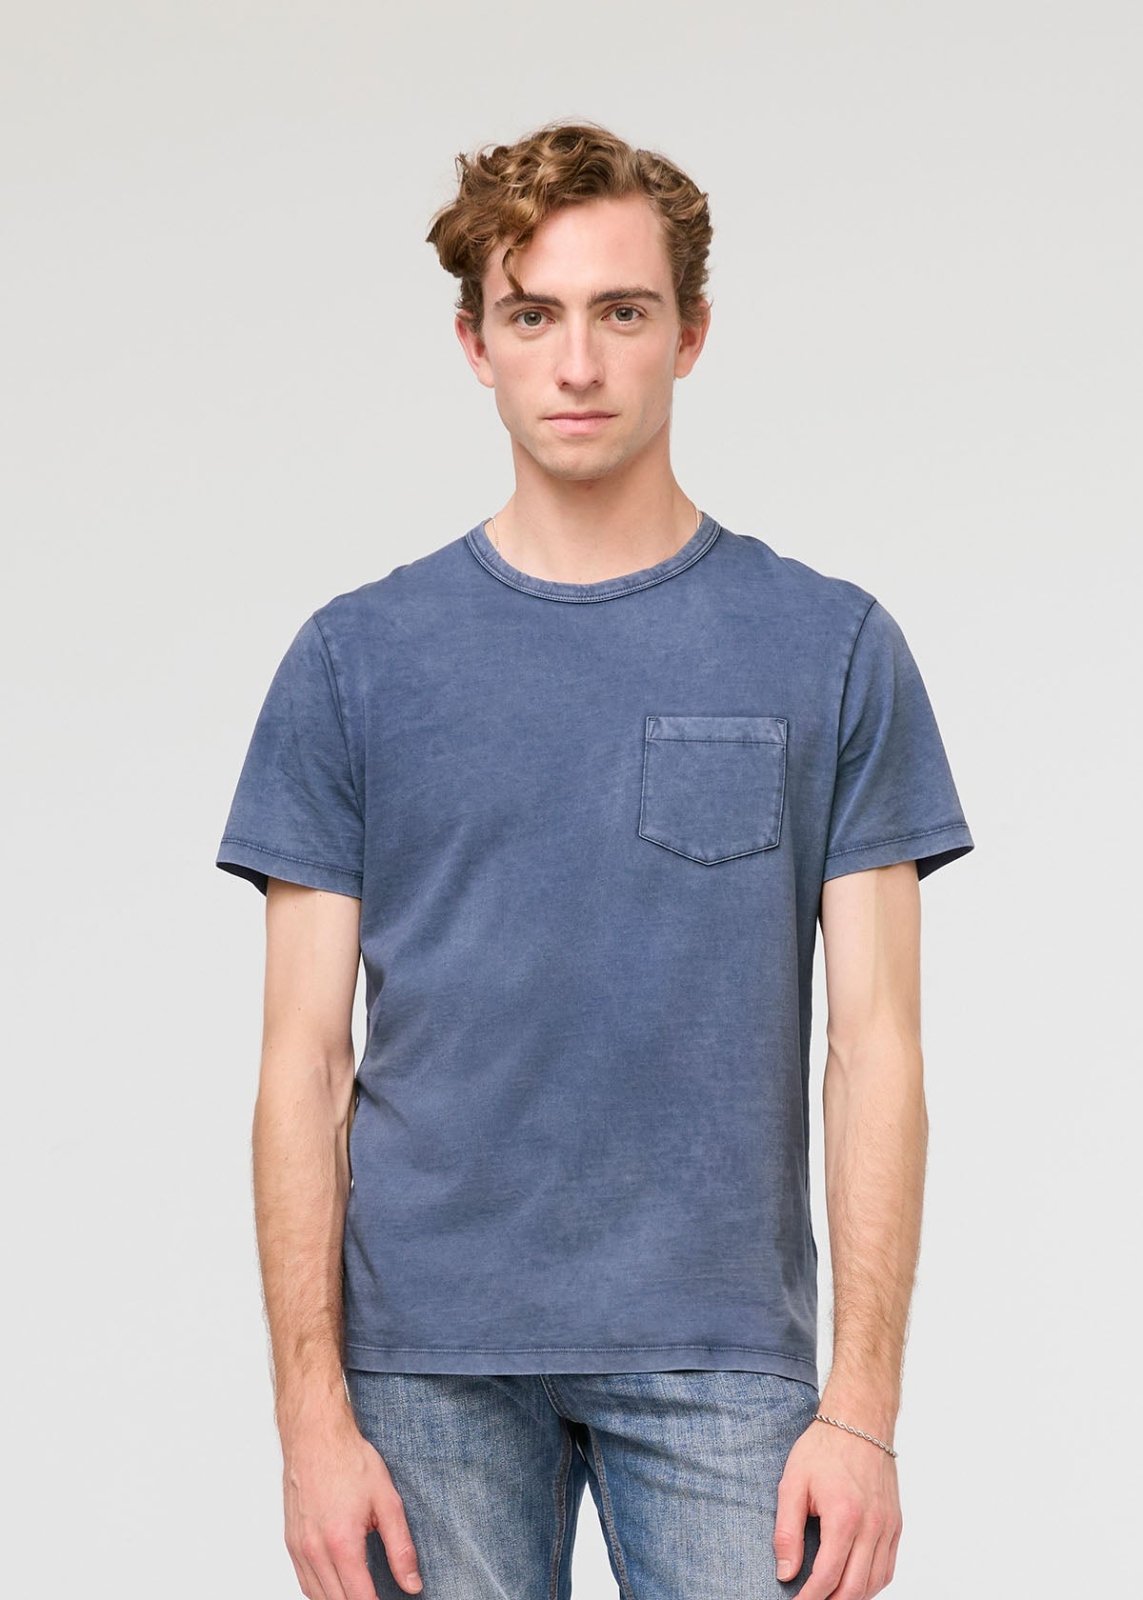 mens pima cotton vintage style blue t-shirt front